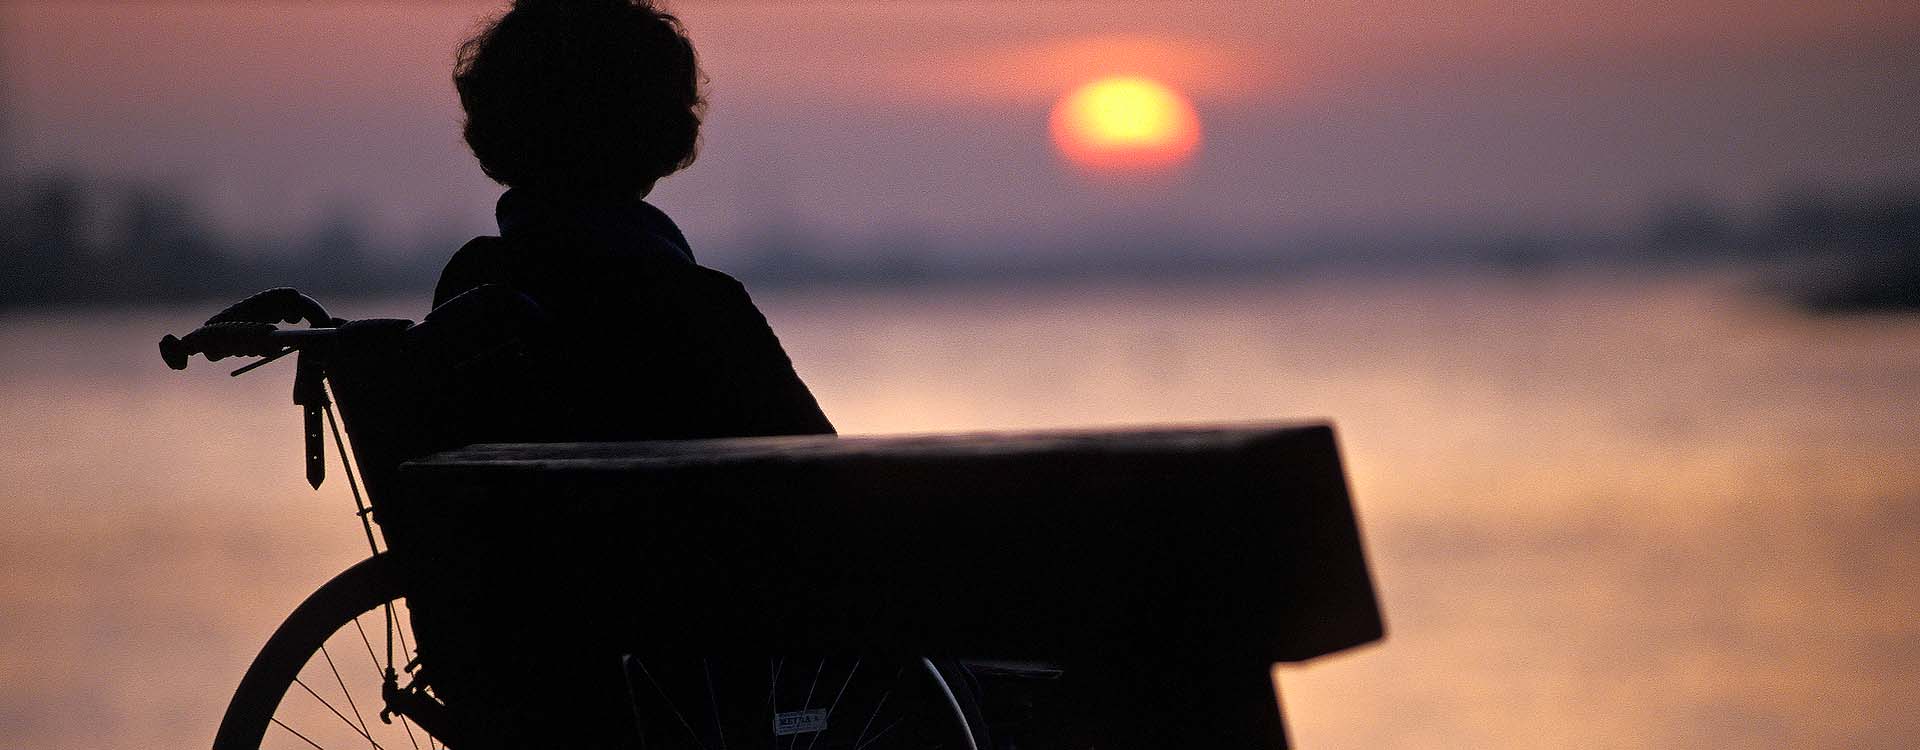 Mevrouw in rolstoel naast een bankje kijkt naar zonsondergang boven een rivier.